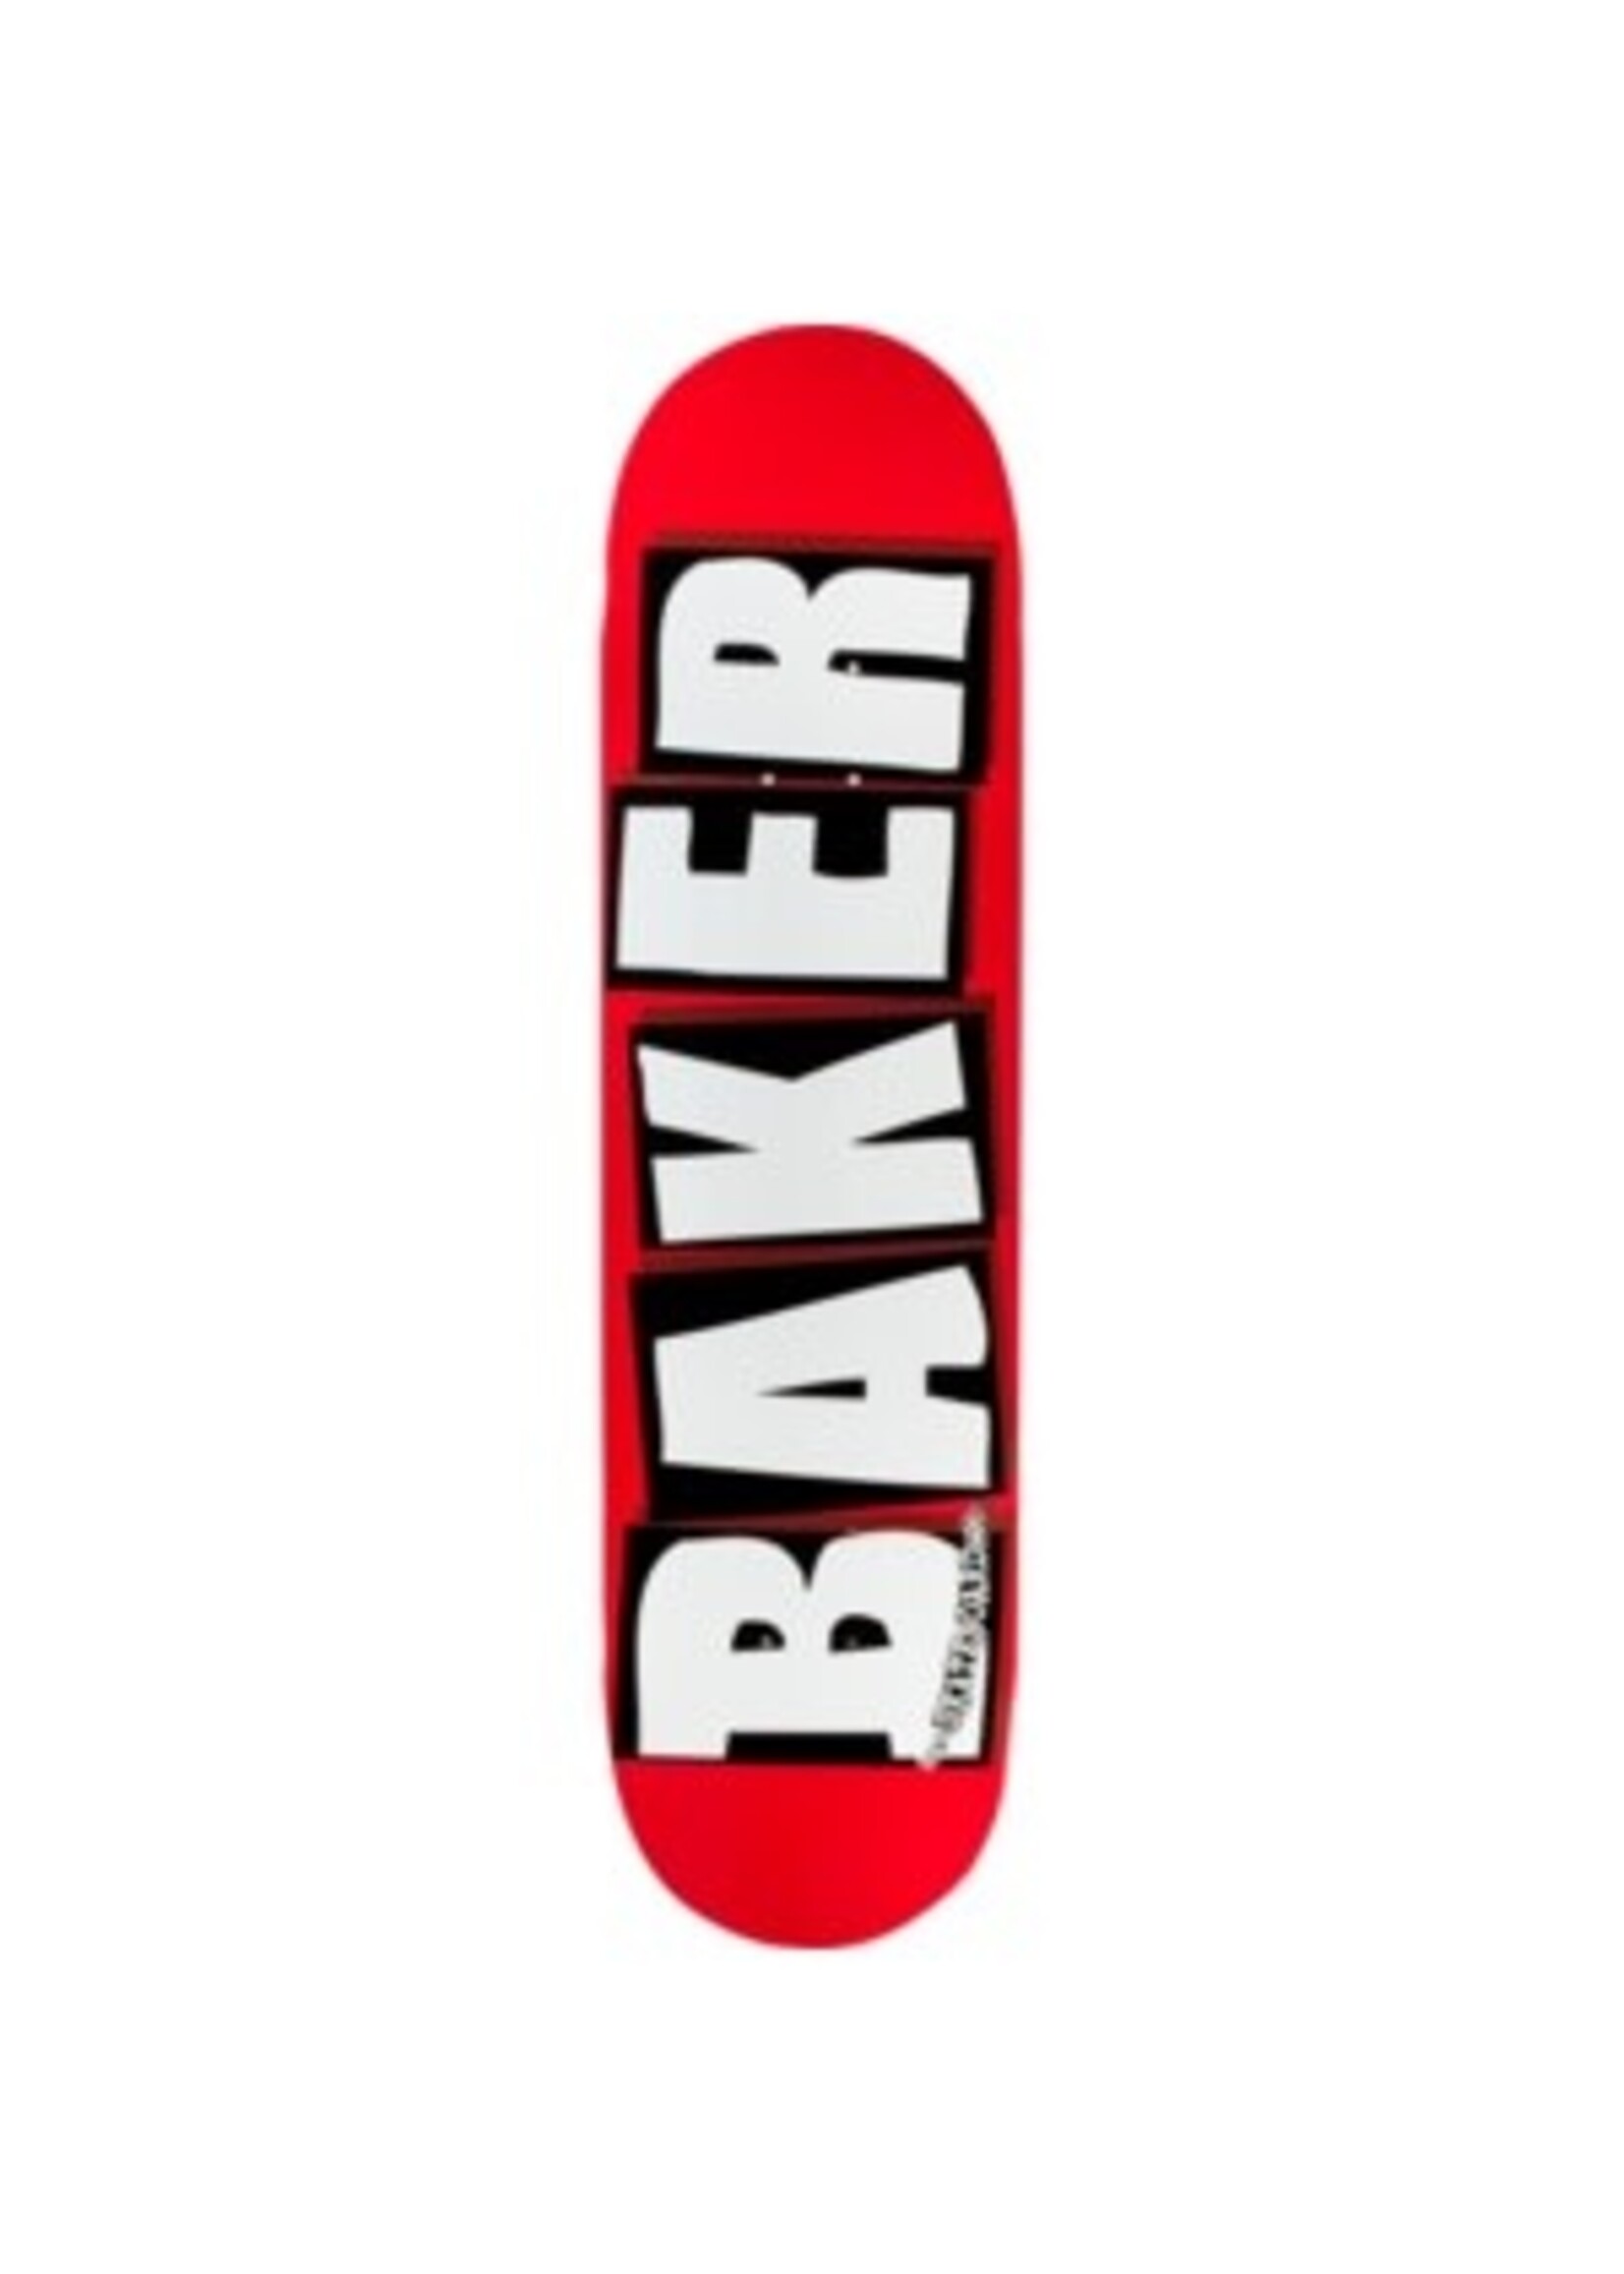 BAKER BRAND LOGO DECK-8.12 RED/WHITE